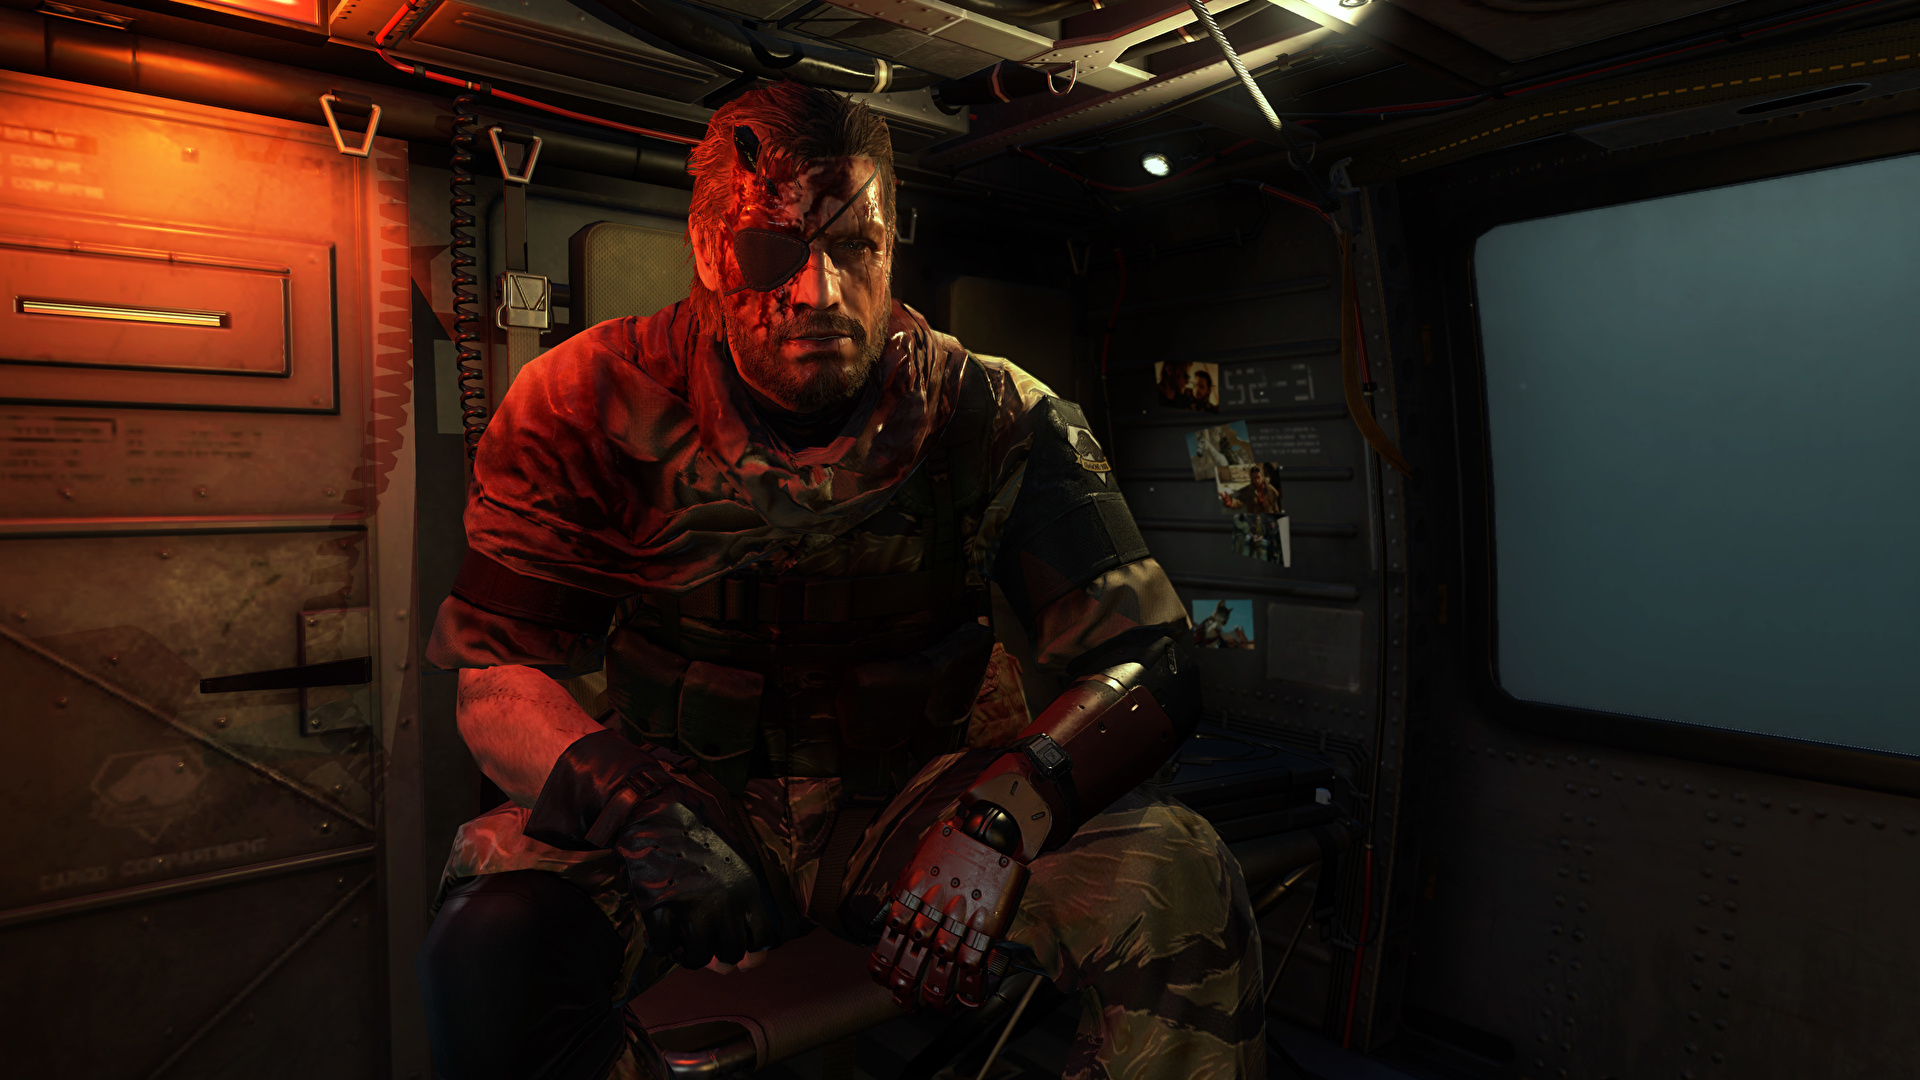 zdjęcia Metal Gear mężczyzna opaską na oku Solid V, Solid Snake Grafika 3D Gry wideo 1920x1080 Mężczyźni Opaska na oko gra wideo komputerowa